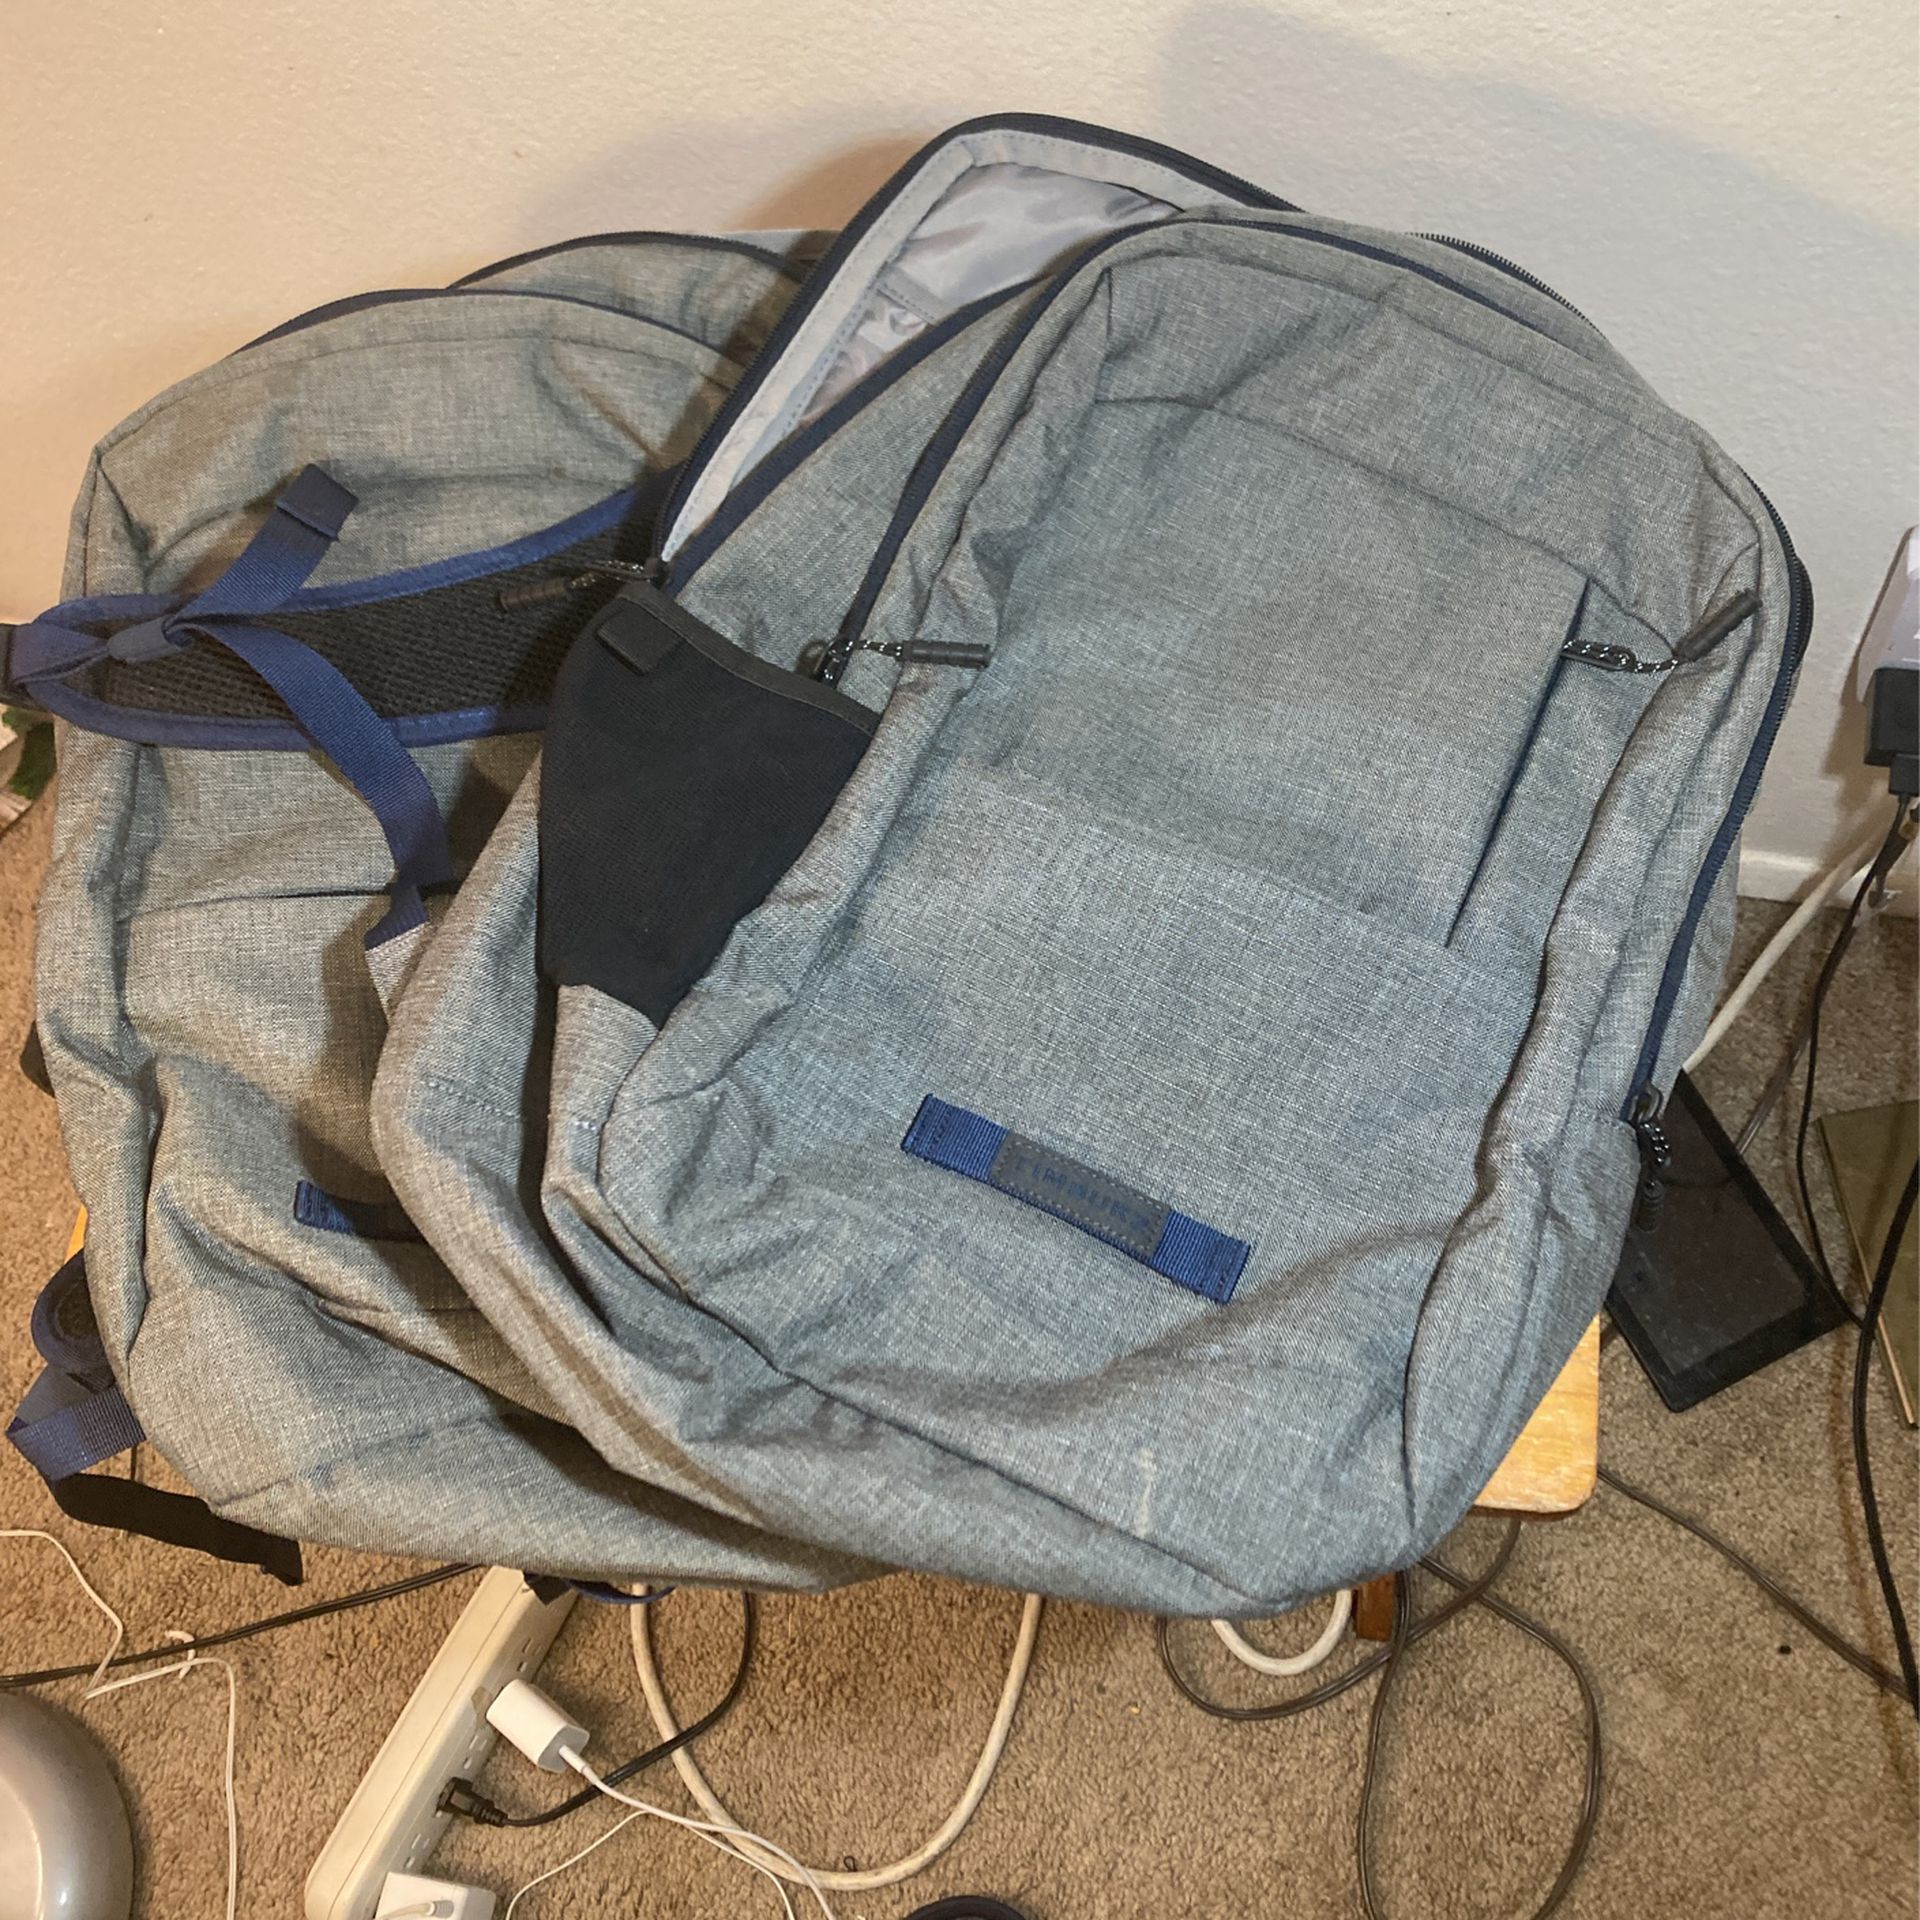 2 Backpacks 